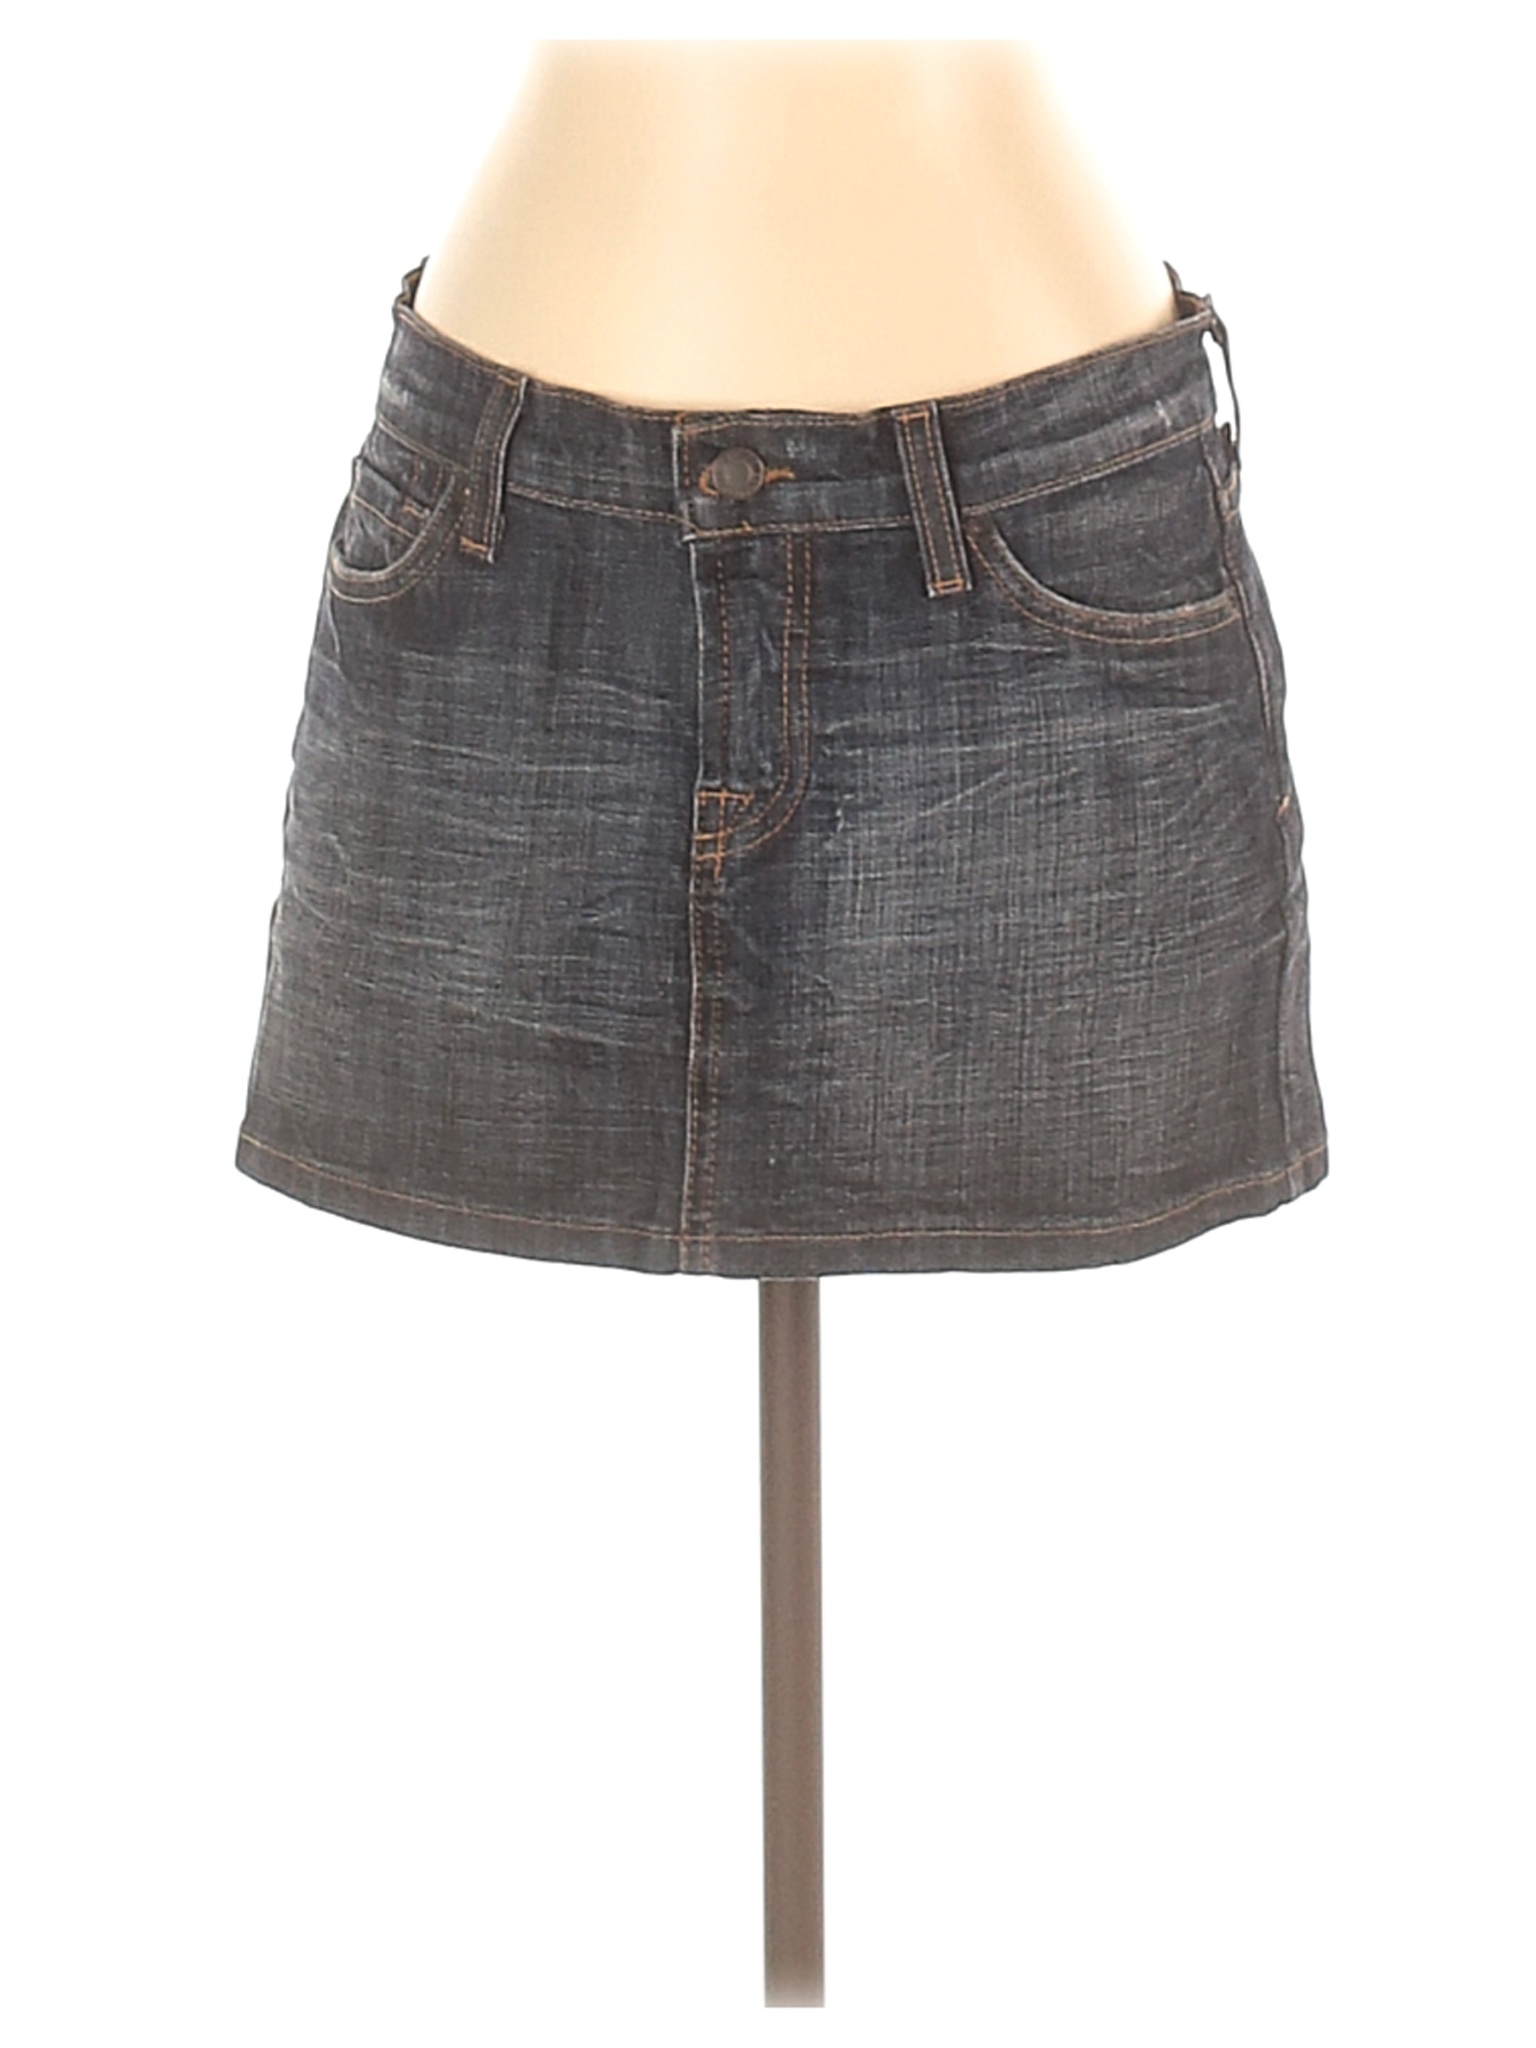 Gadzooks Women Gray Denim Skirt S | eBay